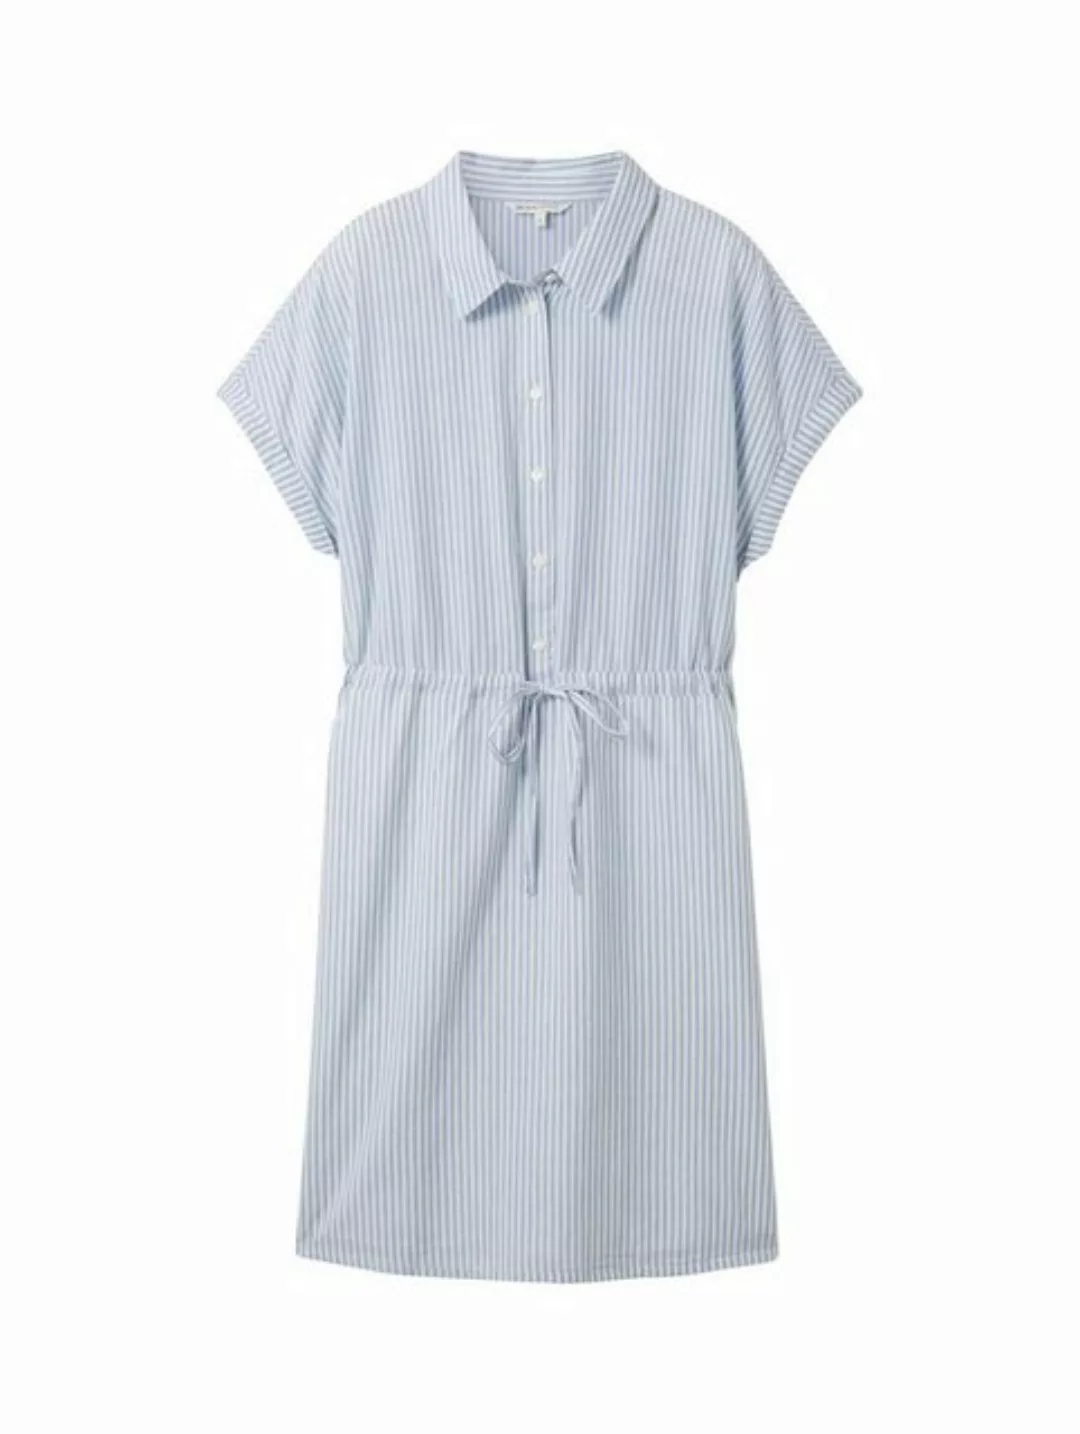 TOM TAILOR Denim Sommerkleid striped mini dress günstig online kaufen